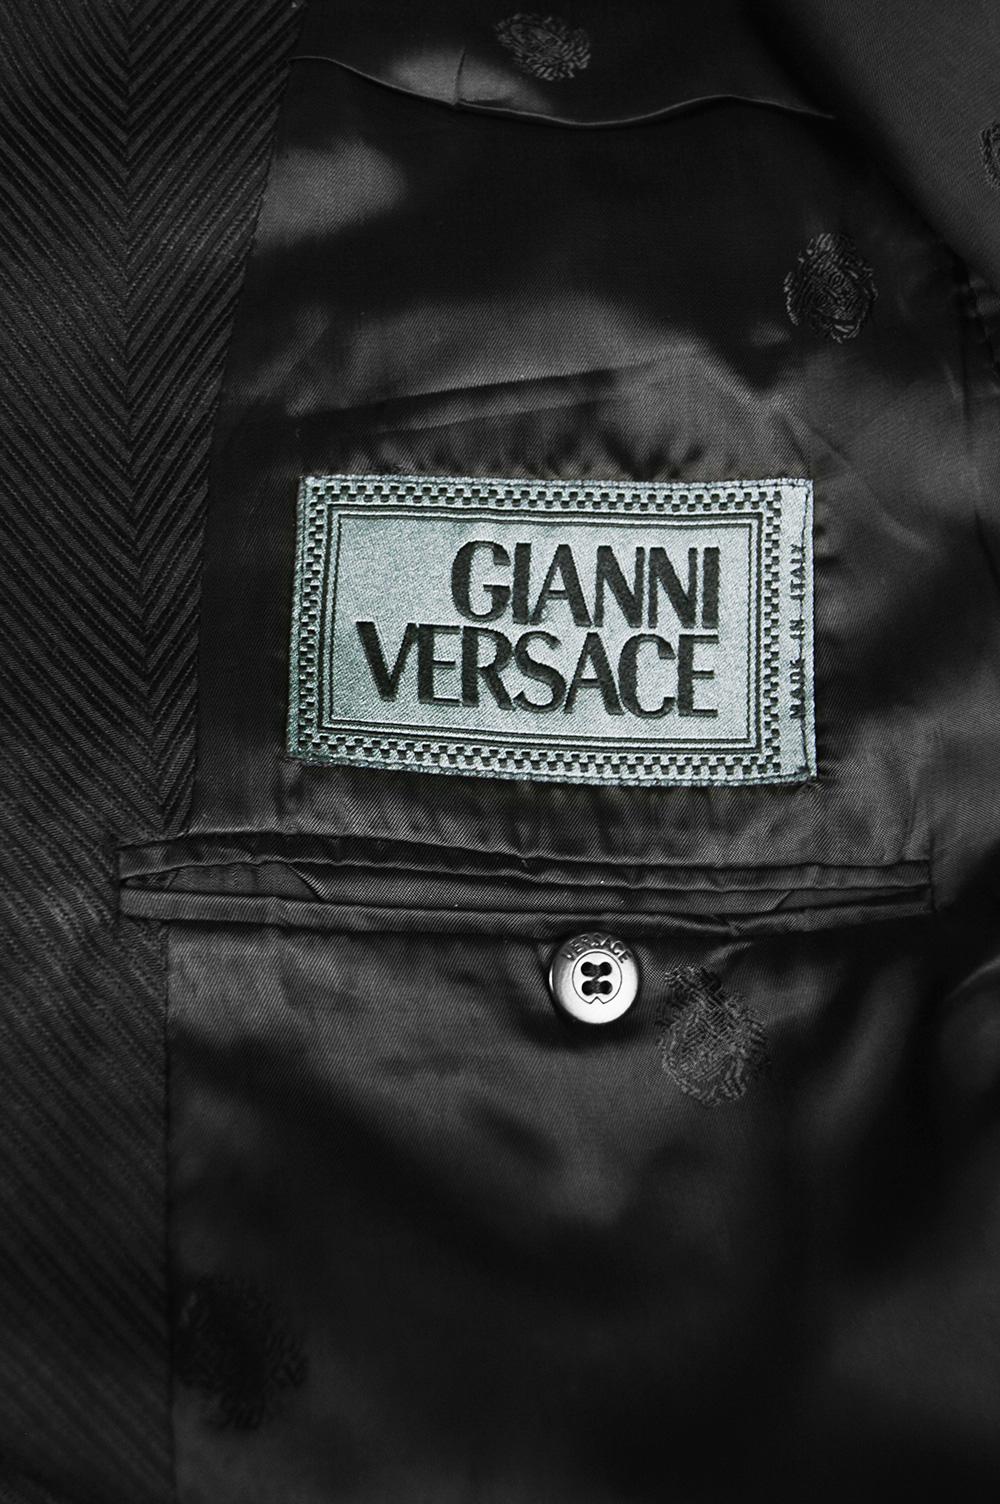 Gianni Versace Men's Black 100% Silk Jacquard 2 Piece Vintage Suit, 1990s For Sale 7